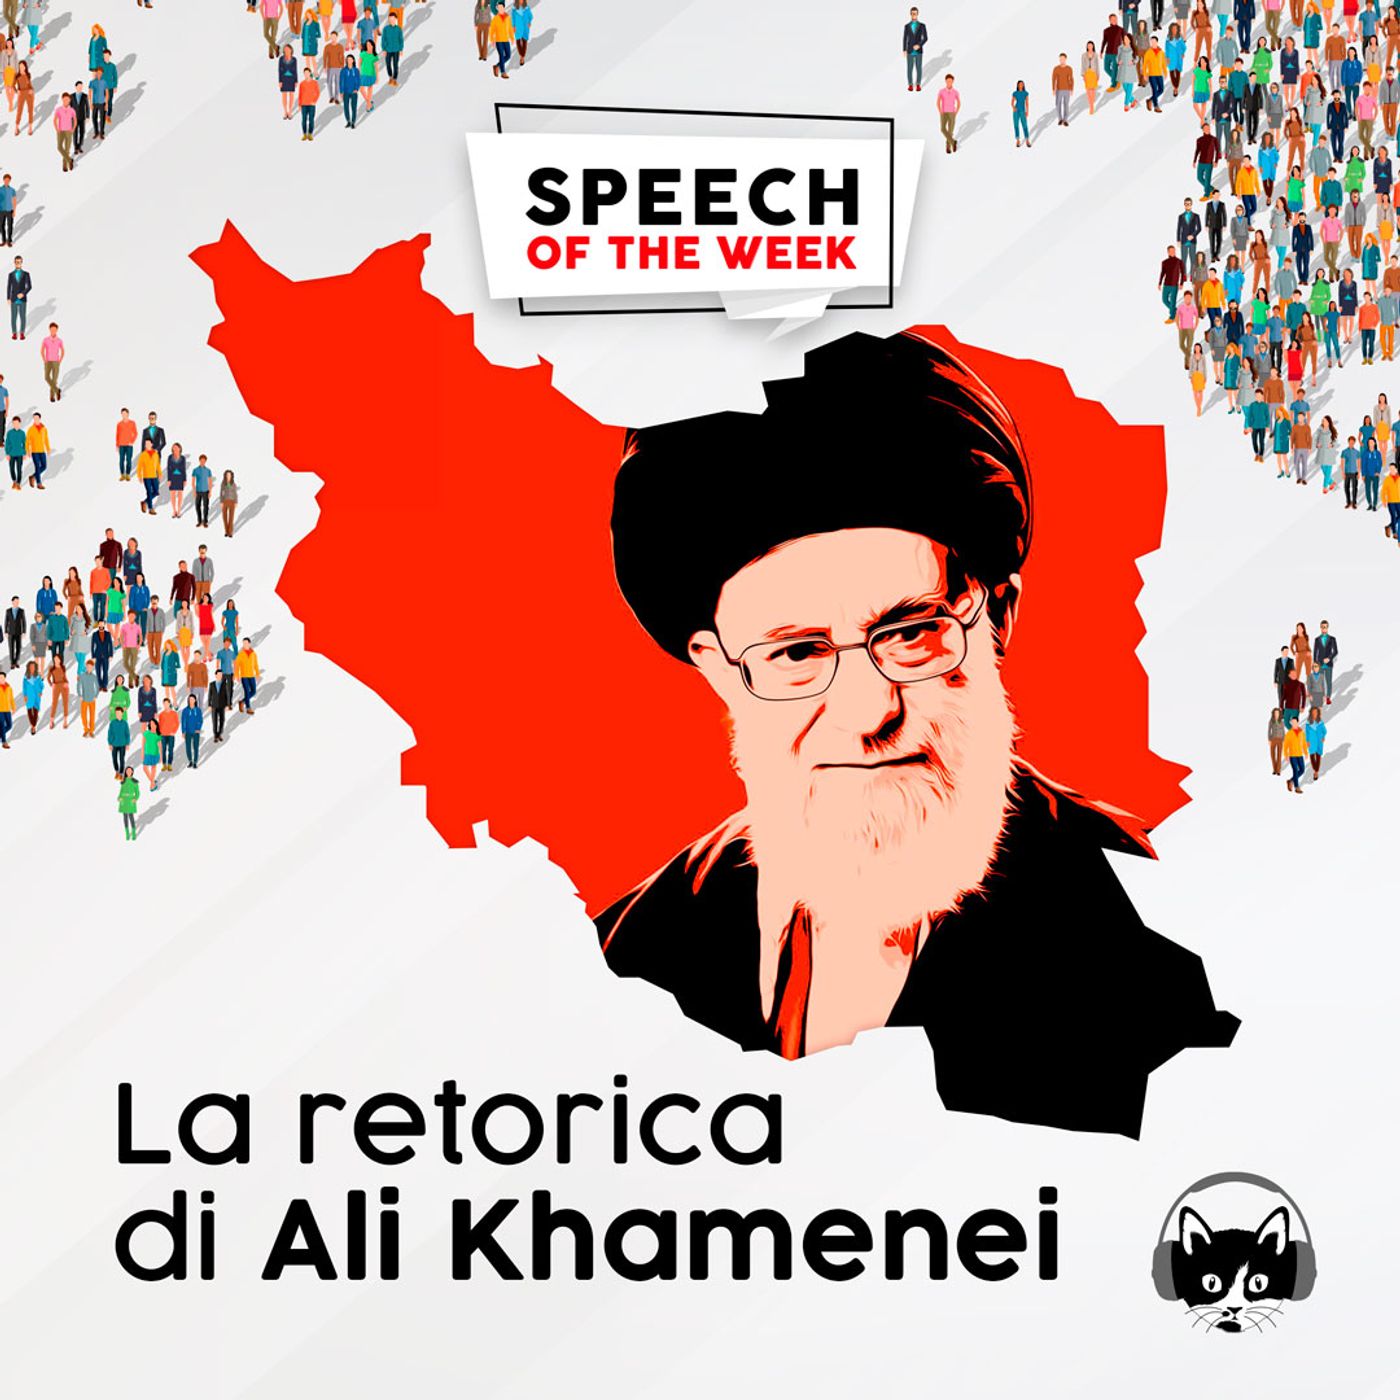 La retorica di Ali Khamenei